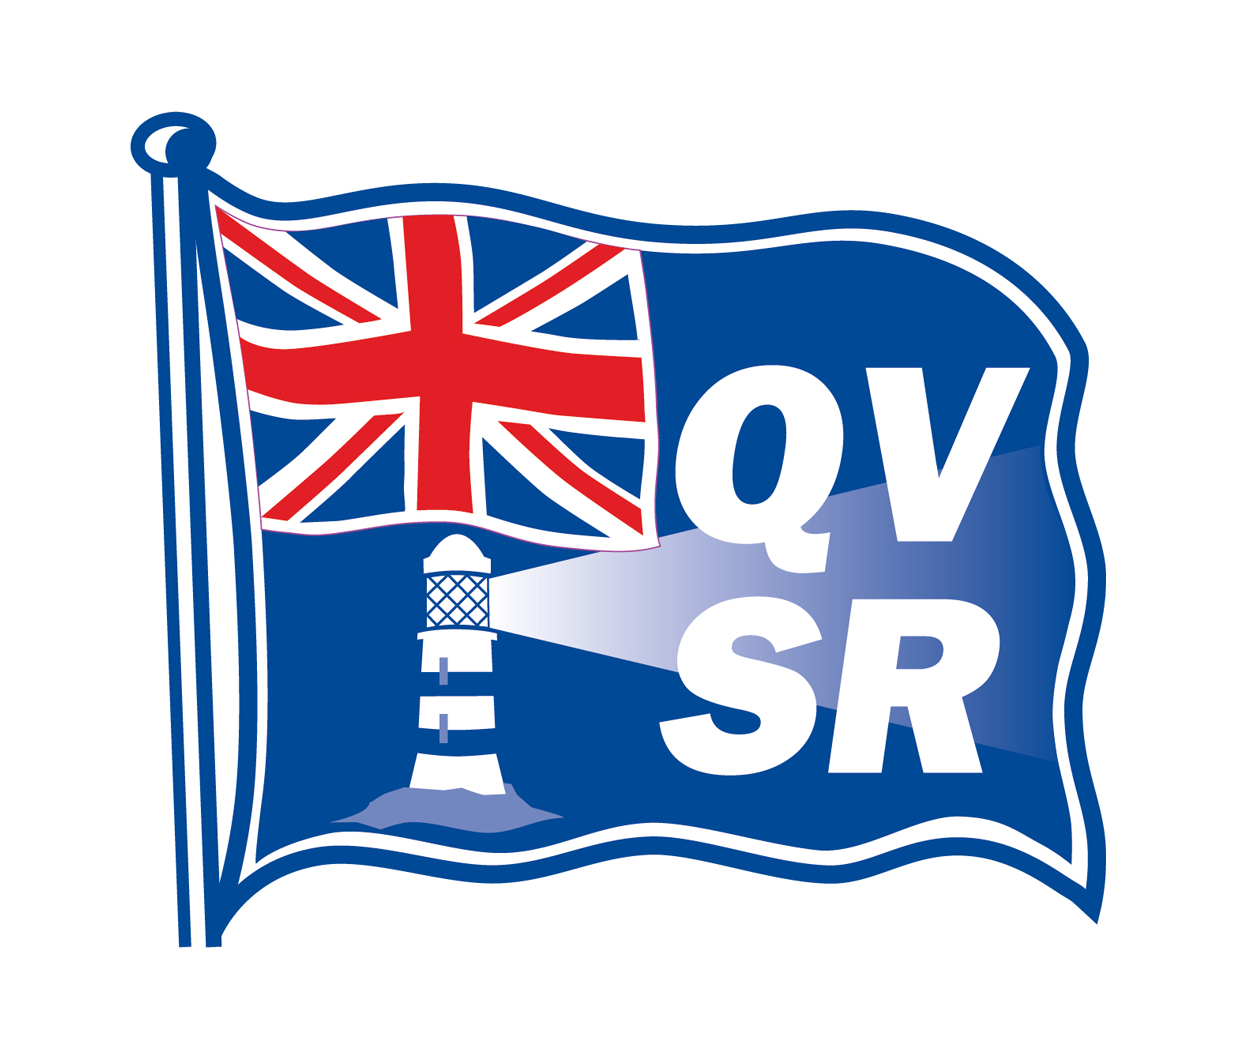 QVSR Old logo before rebrand